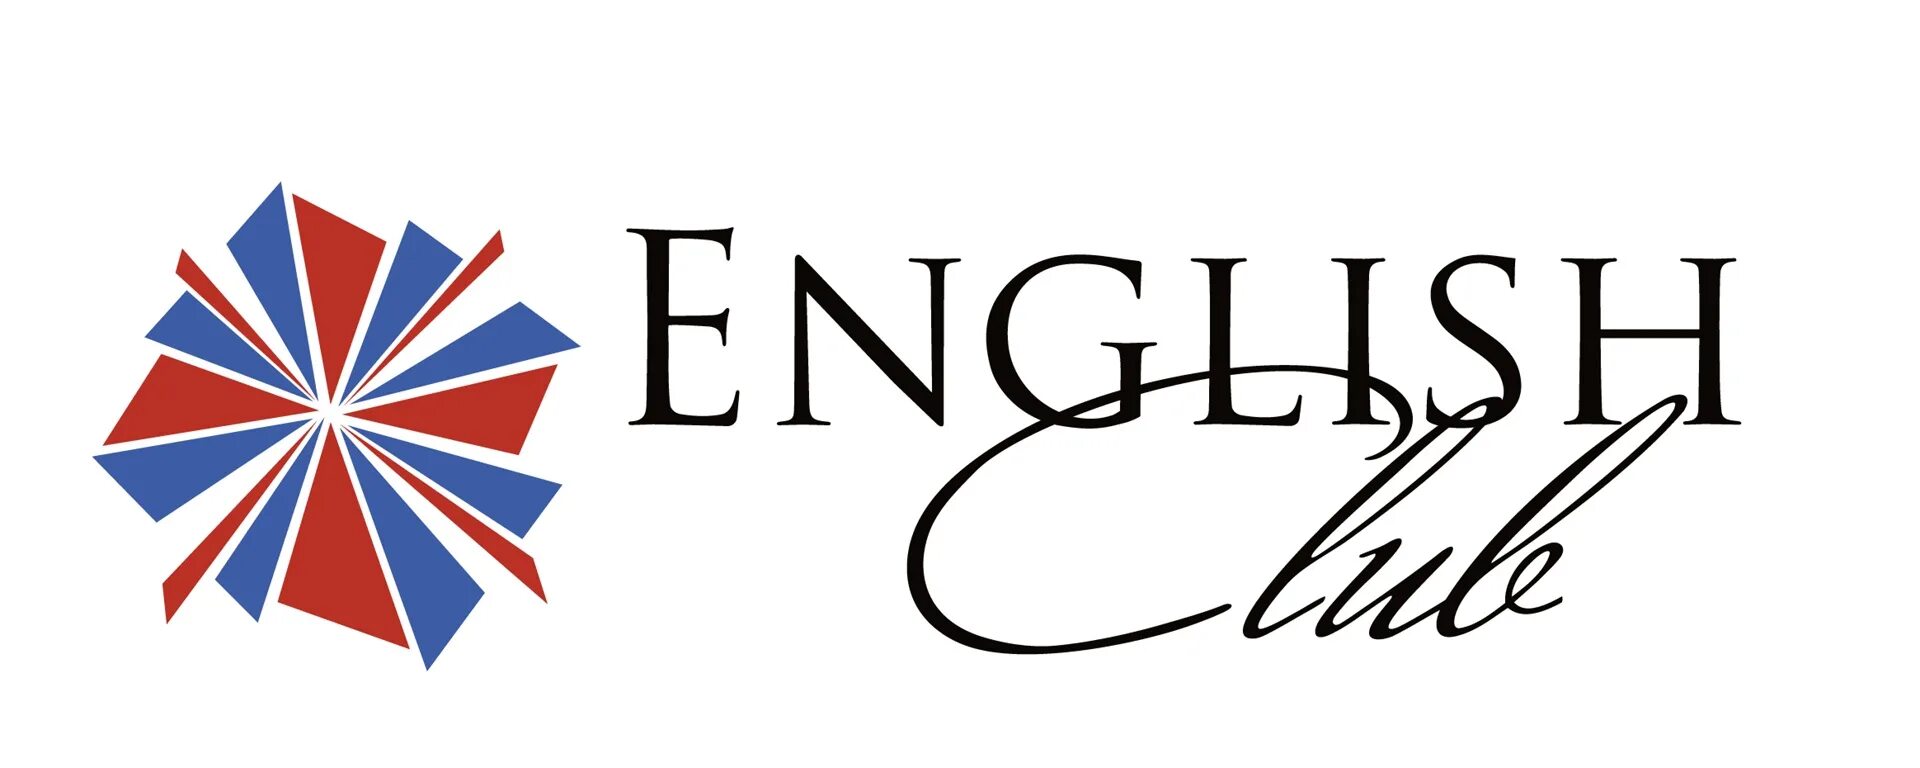 Английский клуб. Эмблемы английских клубов. English Club логотип. Логотип языкового клуба.